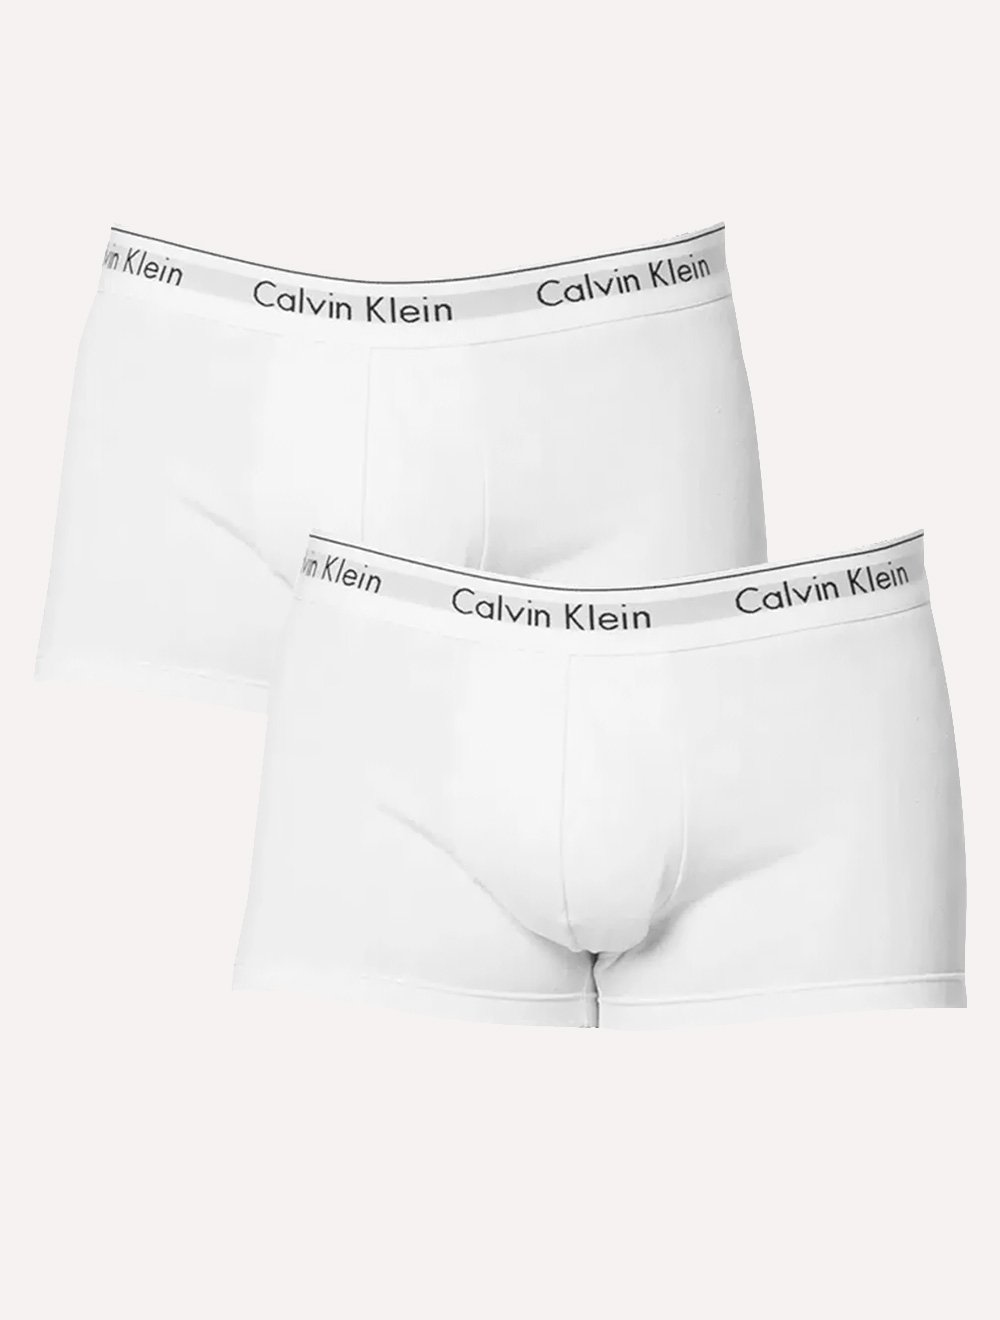 Cuecas Calvin Klein Trunk Modern Cotton Branca Pack 2UN